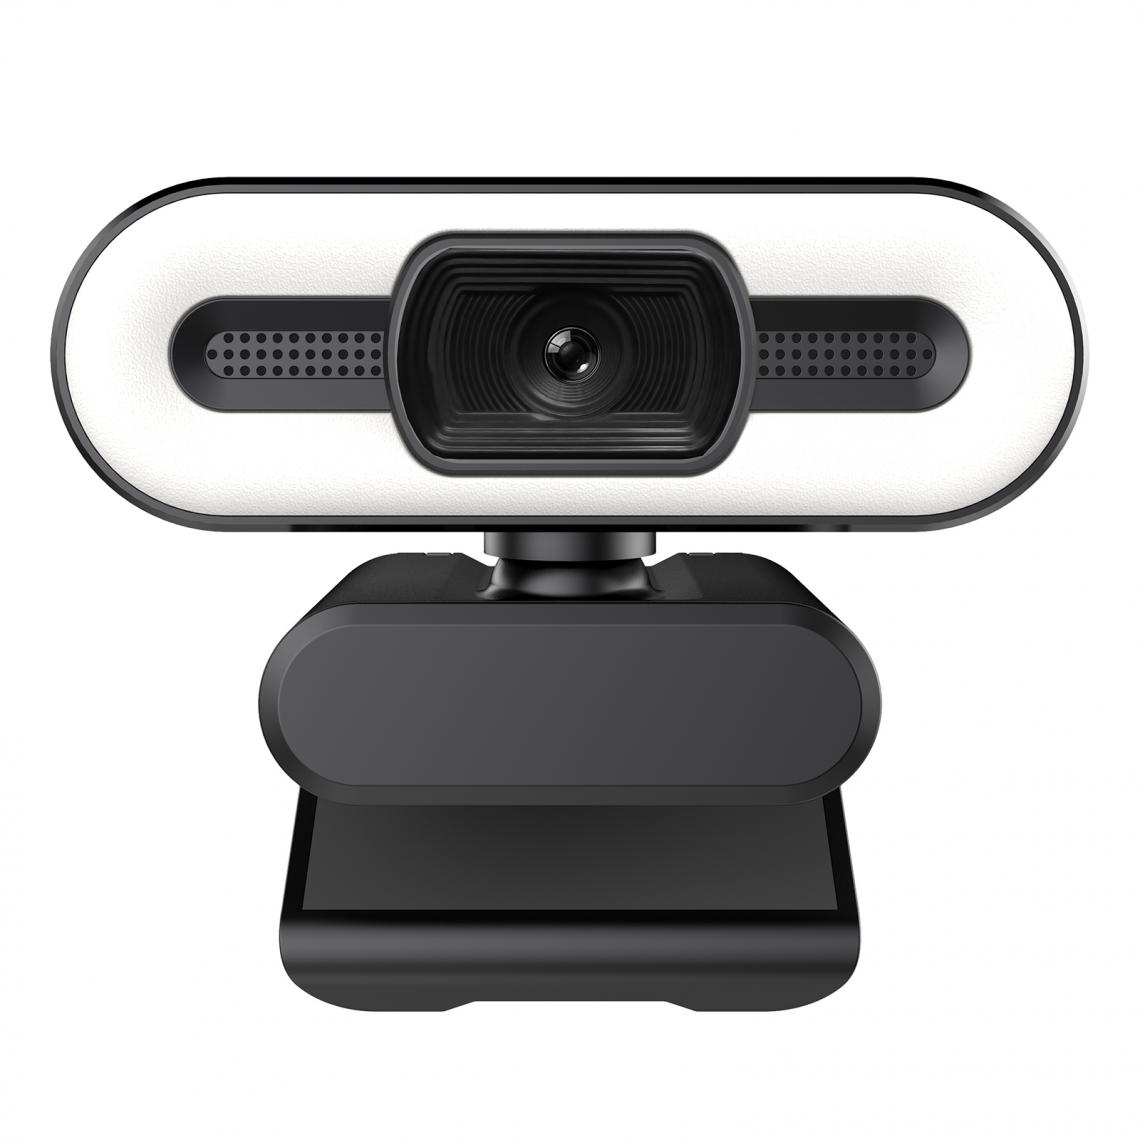 marque generique - Webcam HD compatible 30 Appel vidéo CMOS 2/3/5 millions de capteurs Webcam pour chat vidéo et enregistrement - Webcam